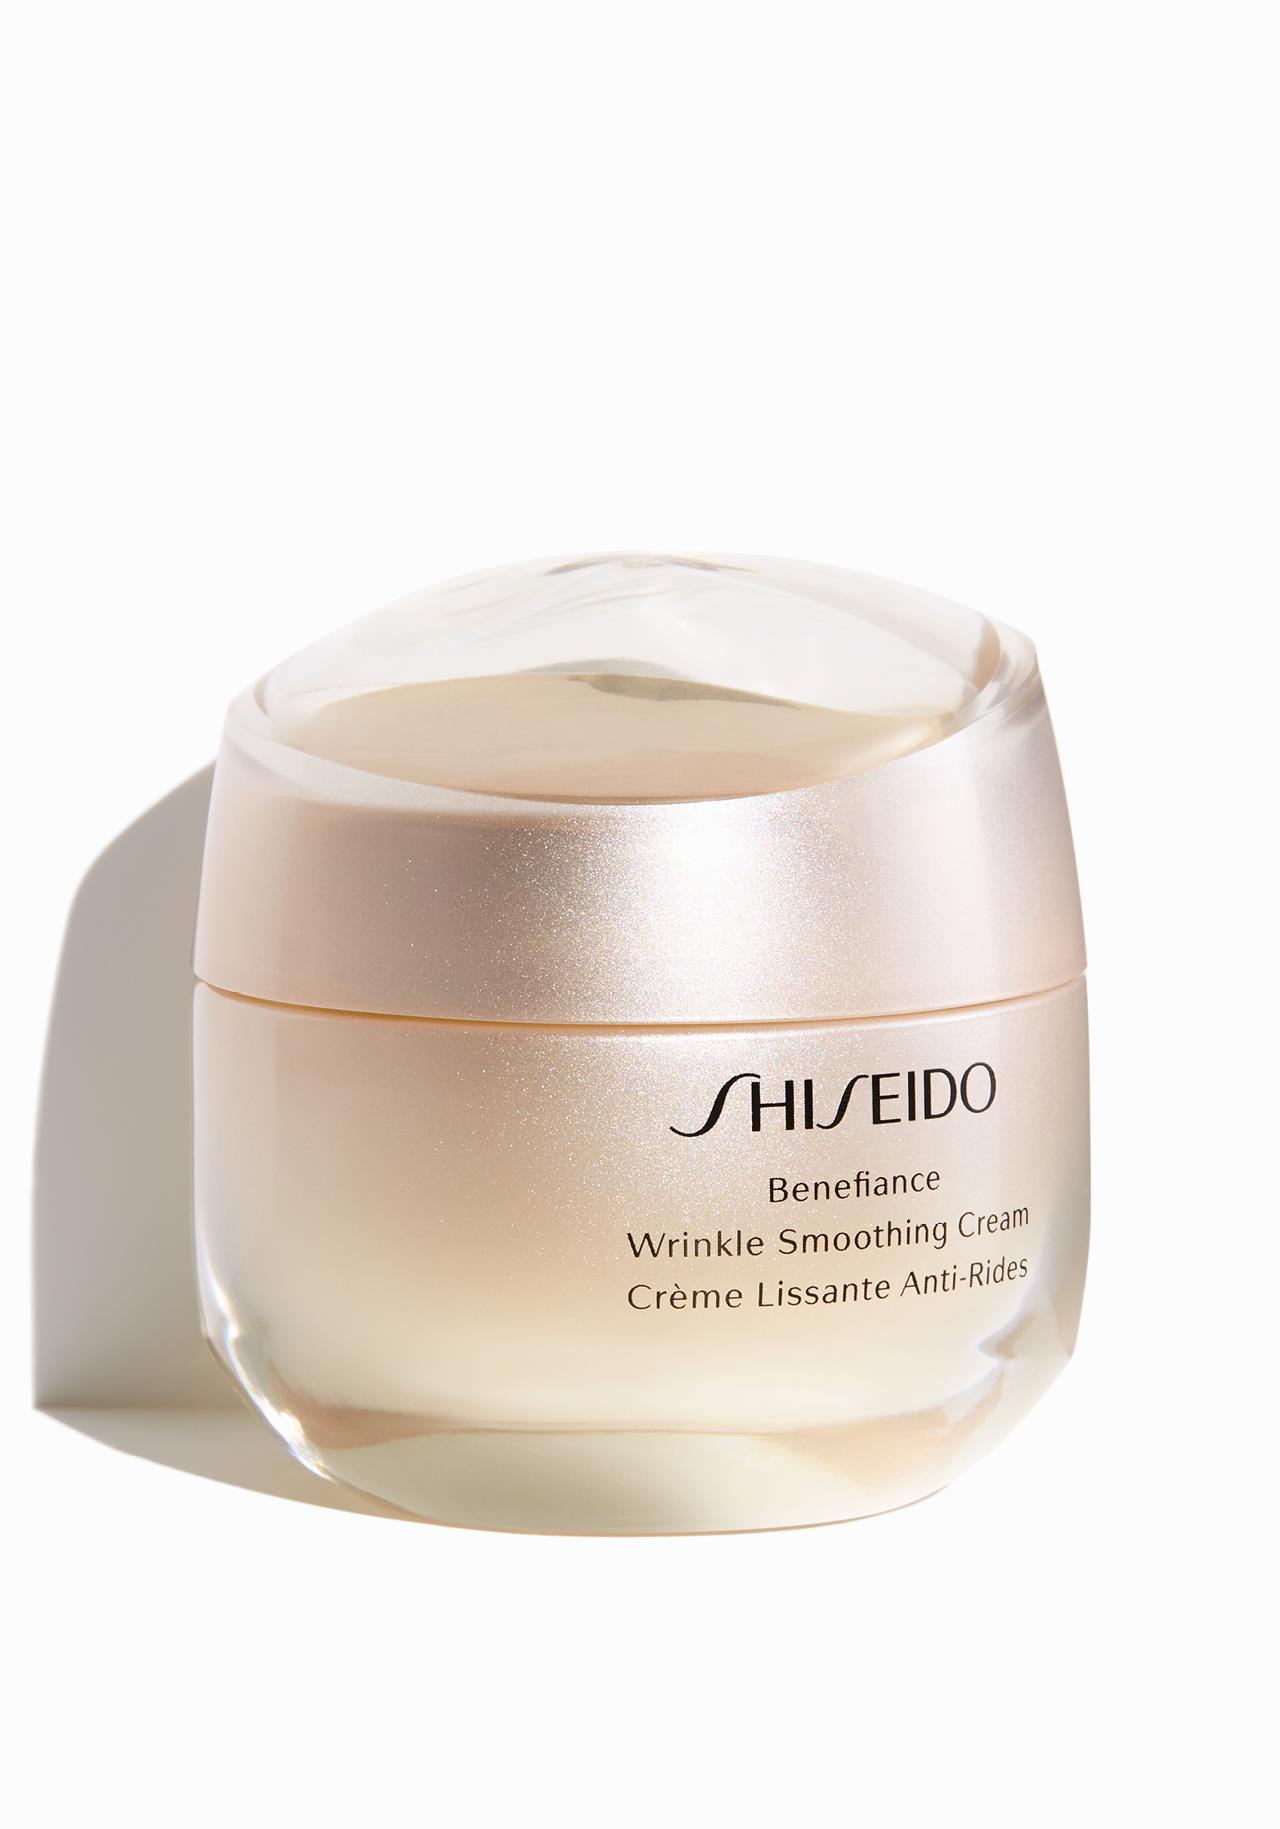 Crema Shiseido Benefiance Wrinkle Smoothing Cream Las mejores cremas para mujeres de 50 años y más 2019